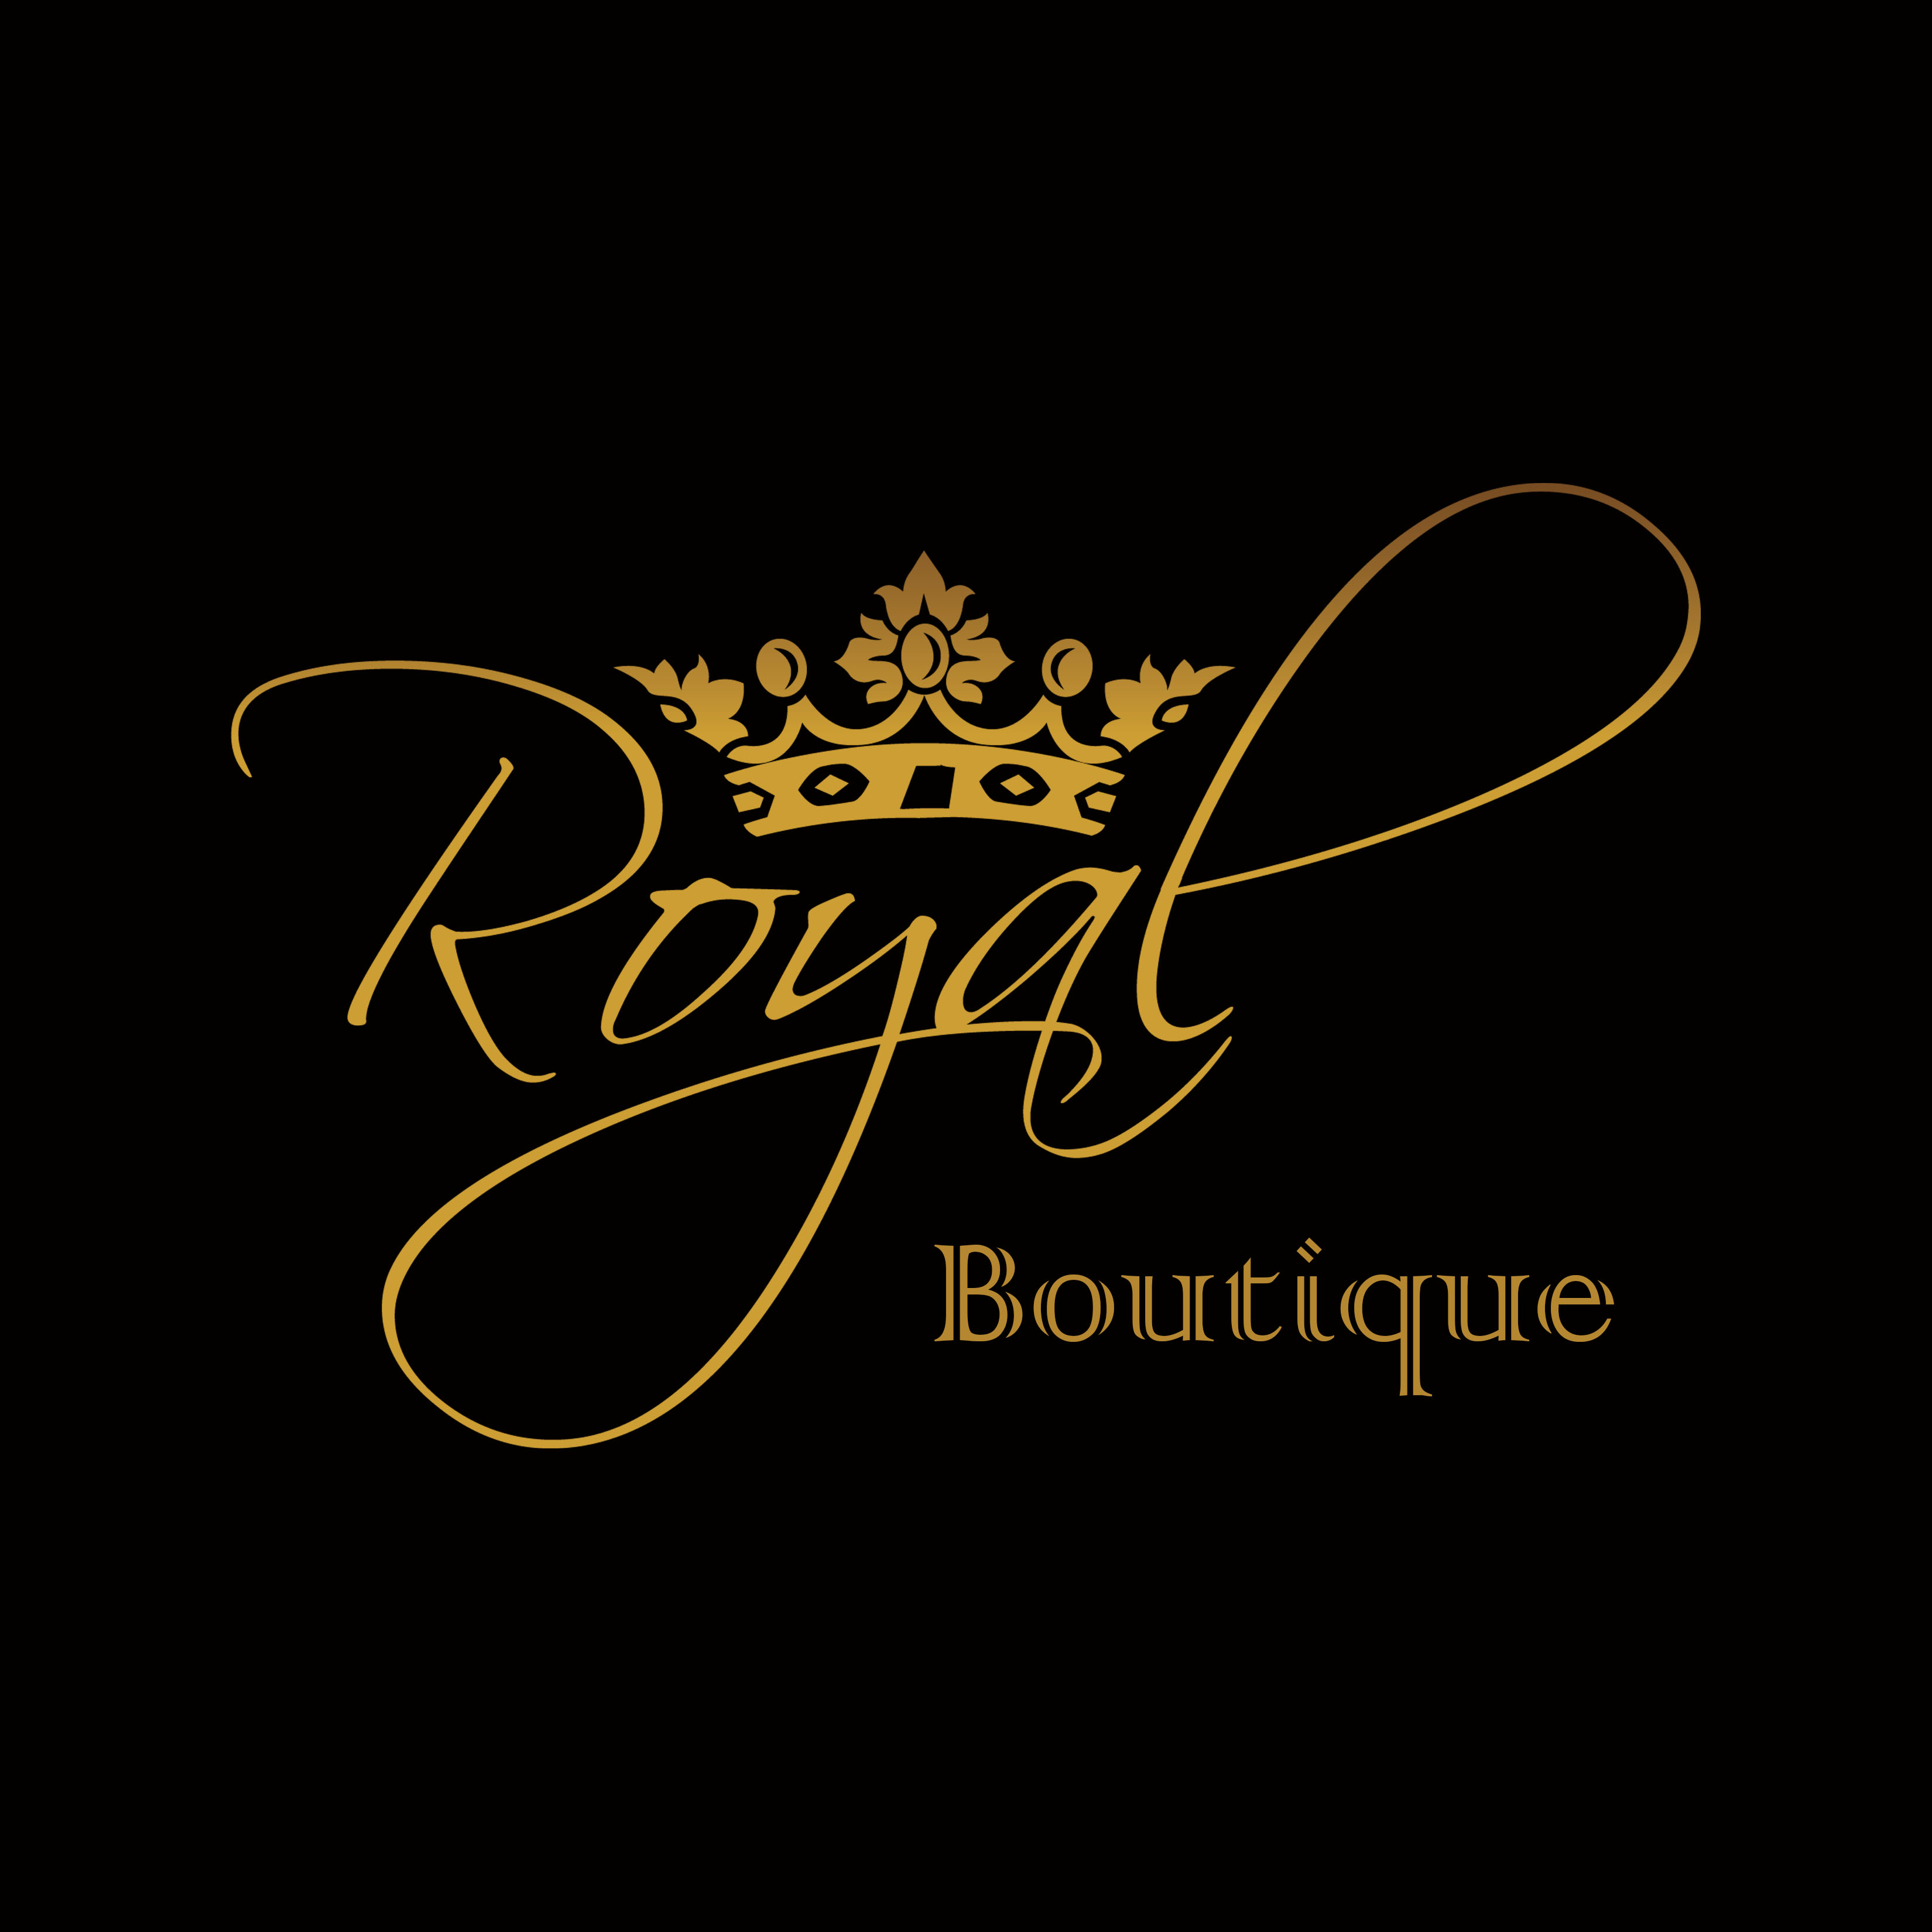 Royal Botique